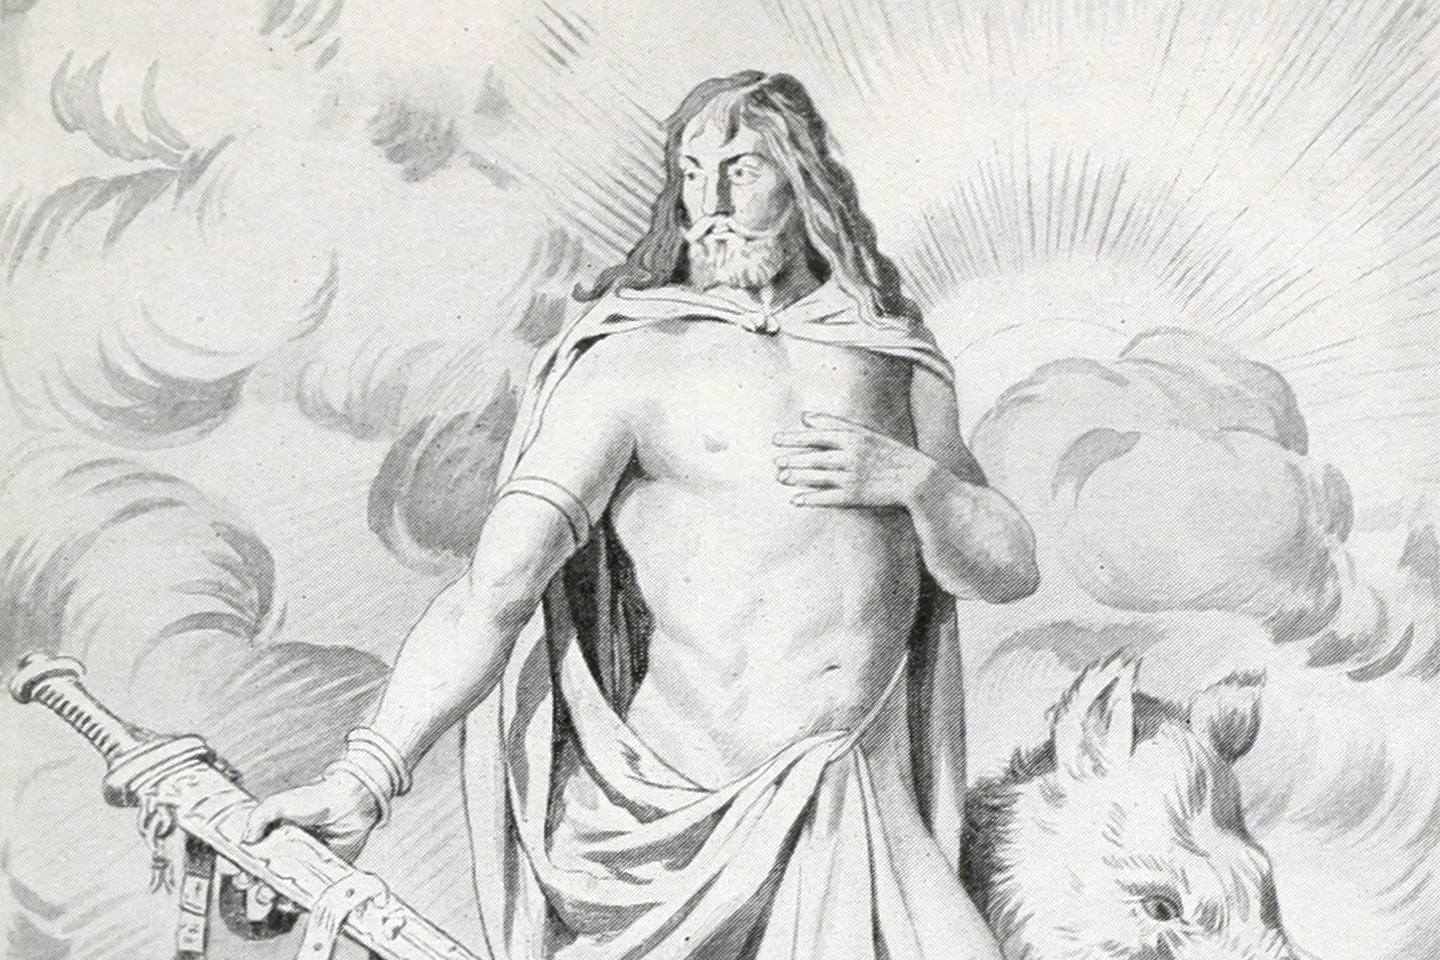 balder norse mythology